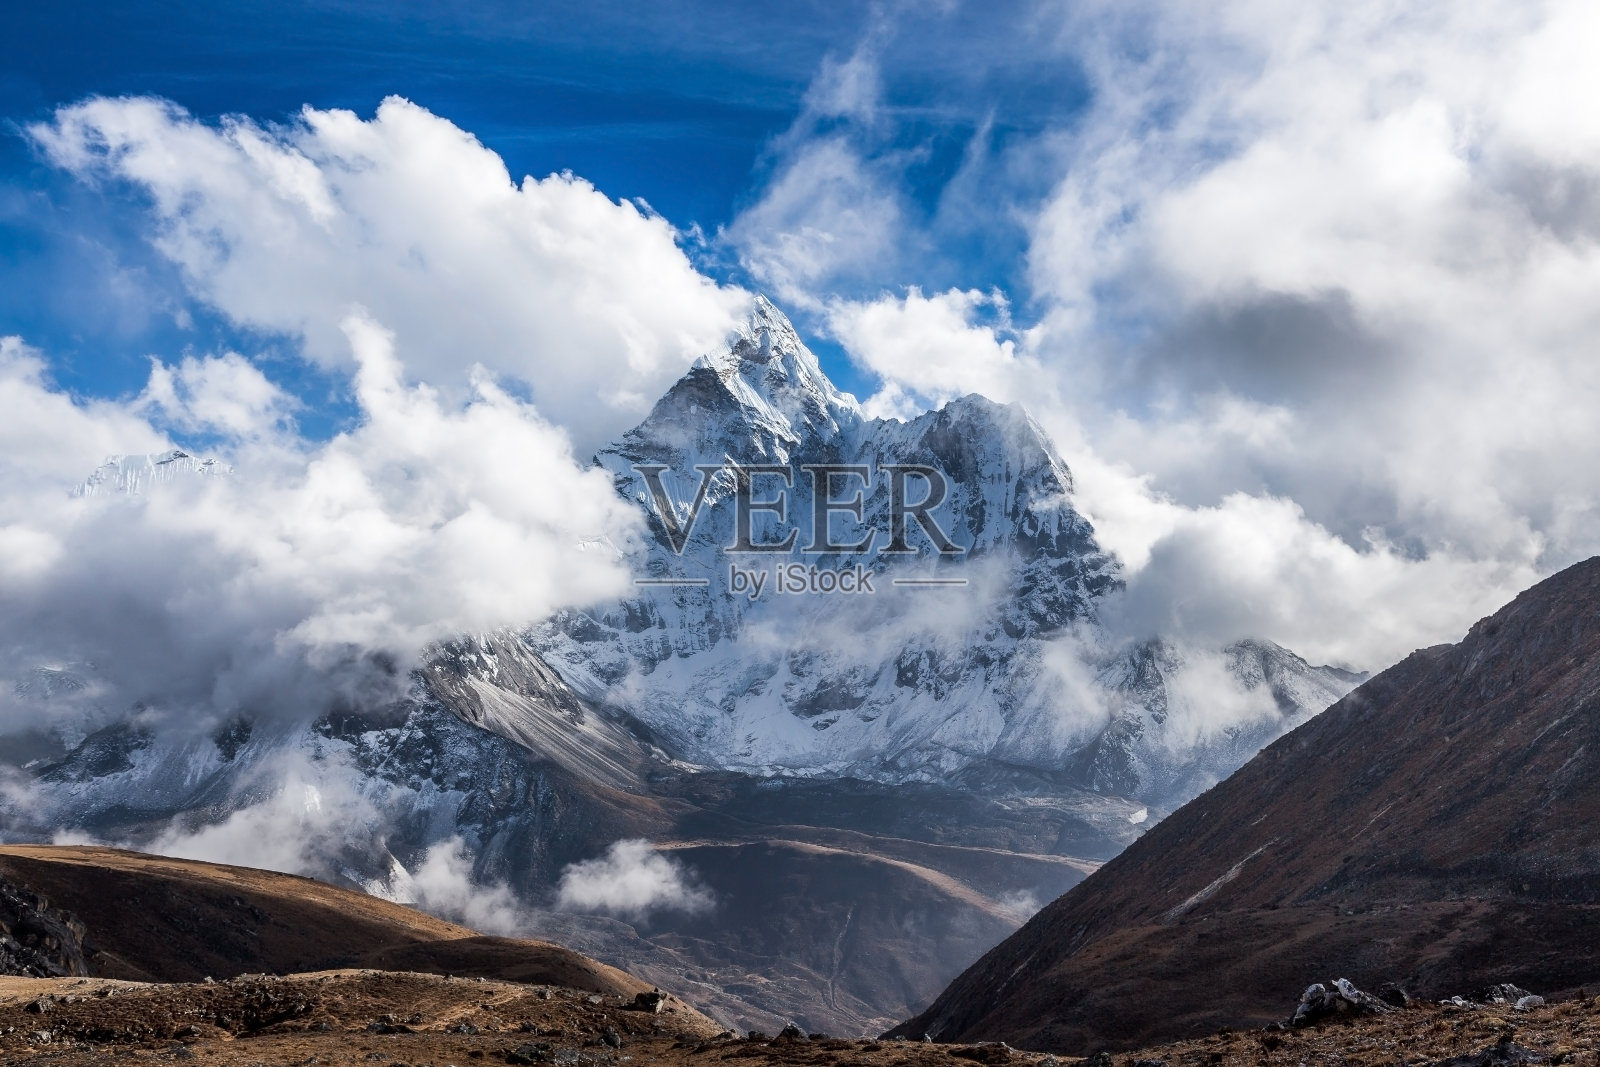 尼泊尔喜马拉雅山上著名的珠穆朗玛峰大本营徒步旅行的阿玛达布拉姆山顶的戏剧性山景。照片摄影图片